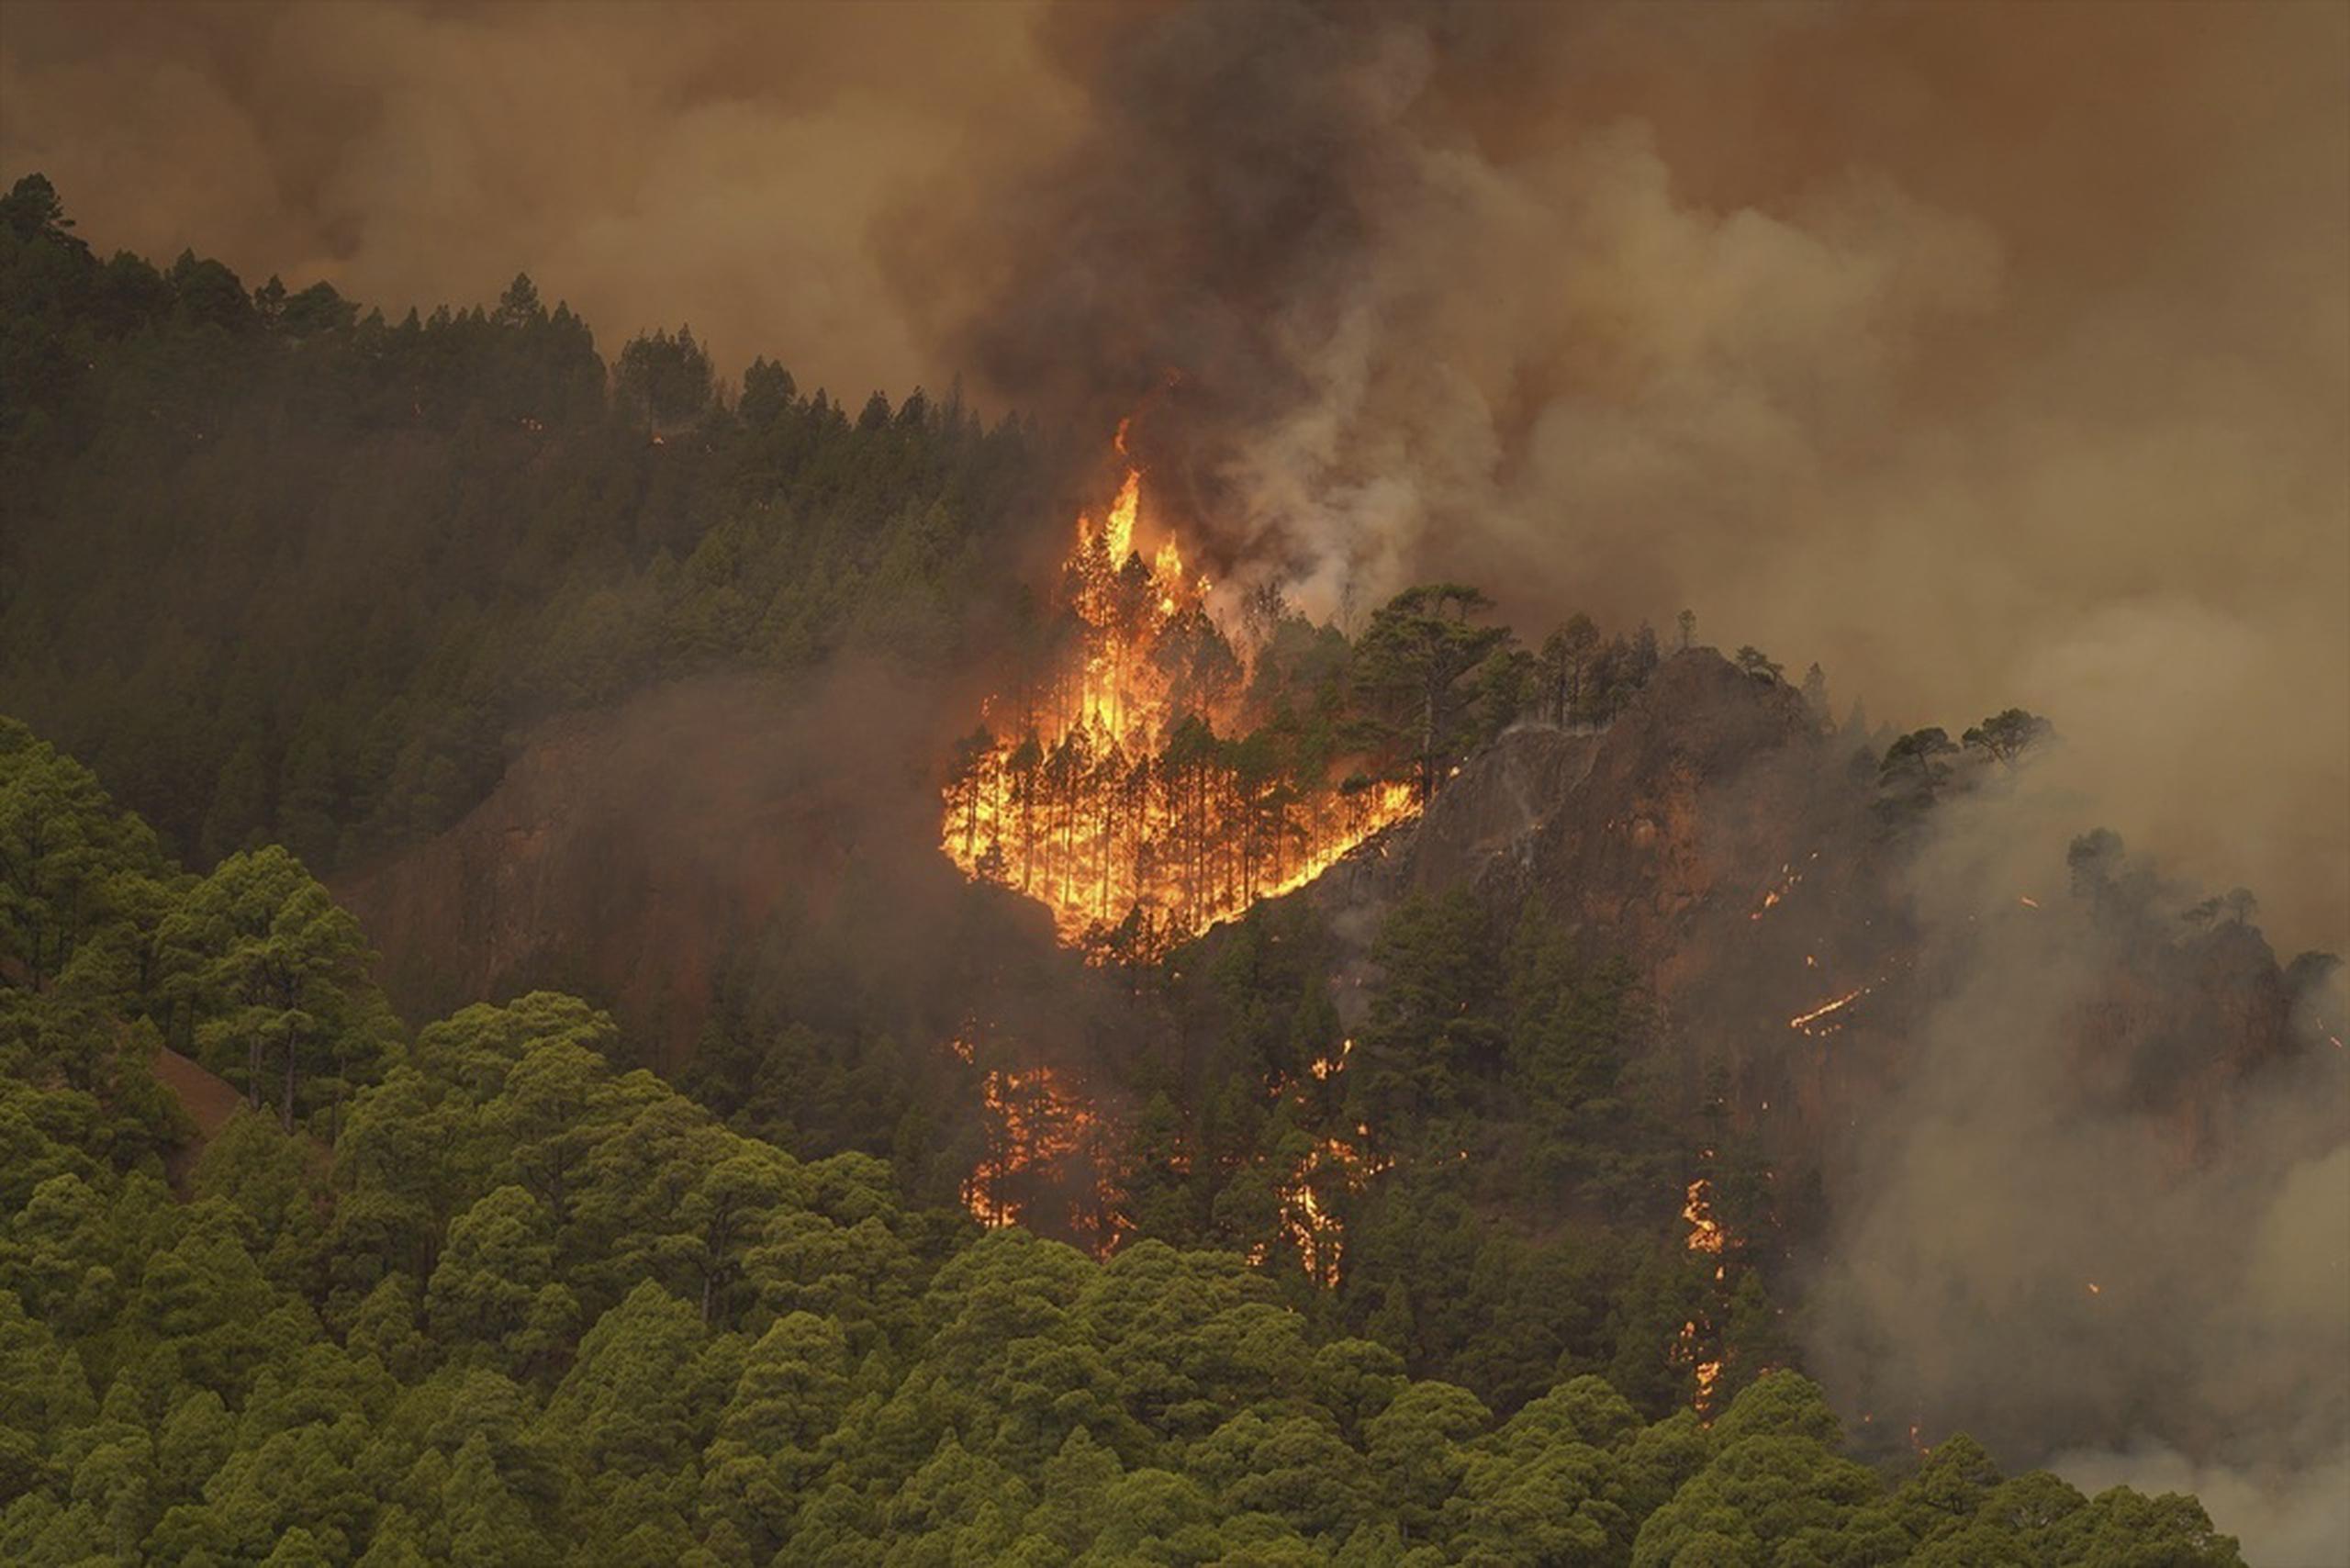 El comienzo de la cuaresma marca el inicio de la temporada de fuegos de pasto e incendios forestales, cuando las condiciones climatológicas suelen tornarse más secas.